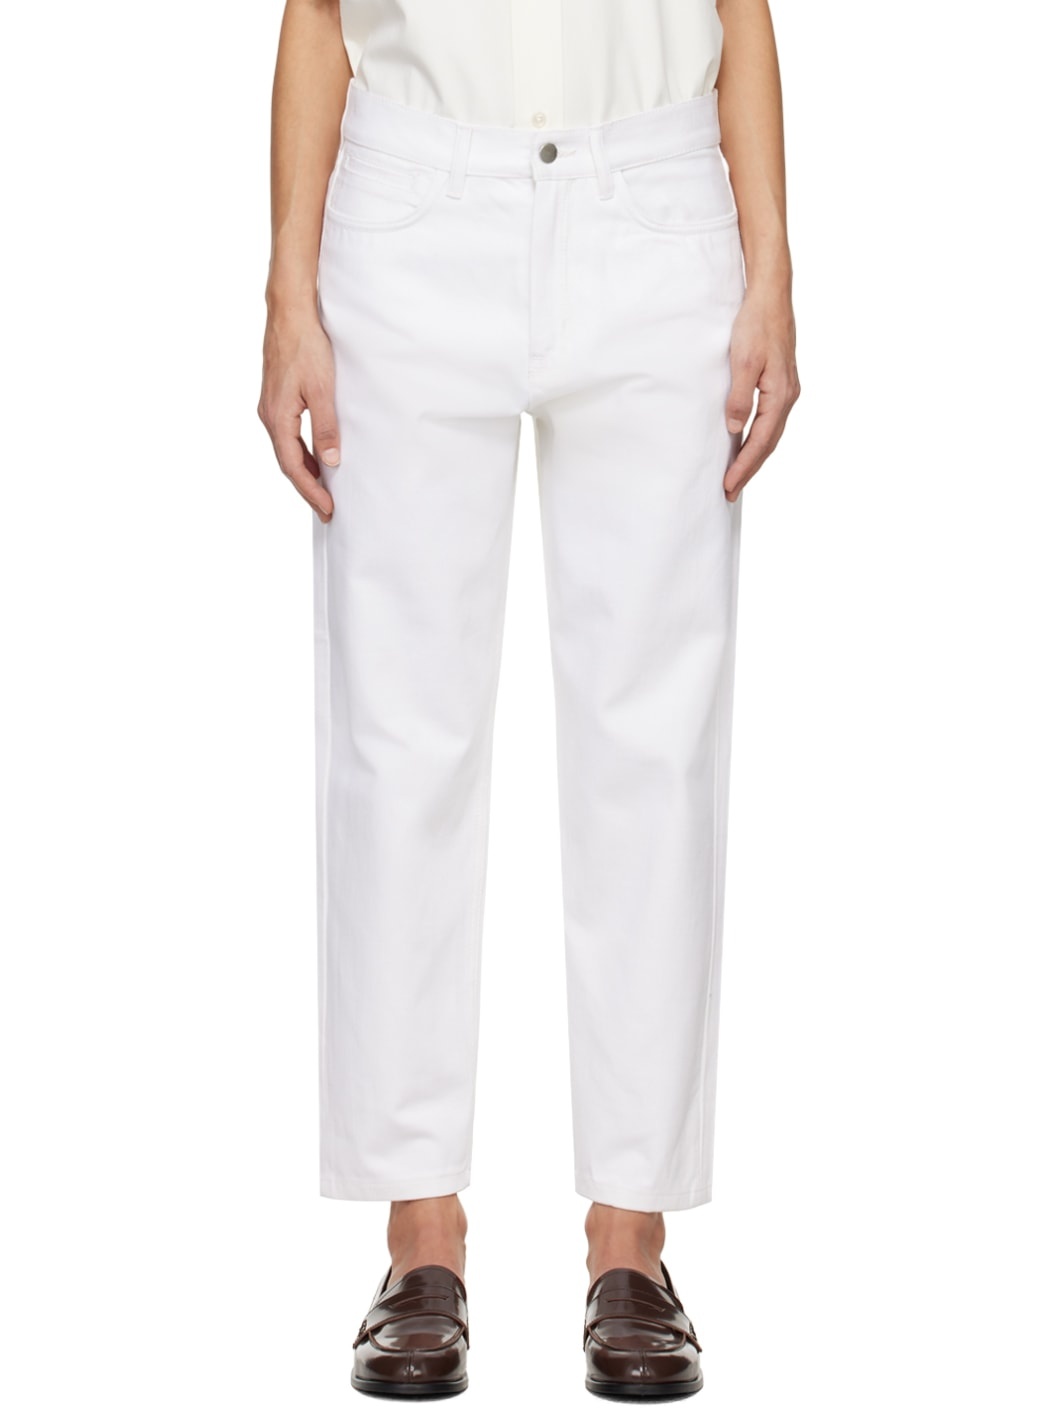 White Avanti Jeans - 1